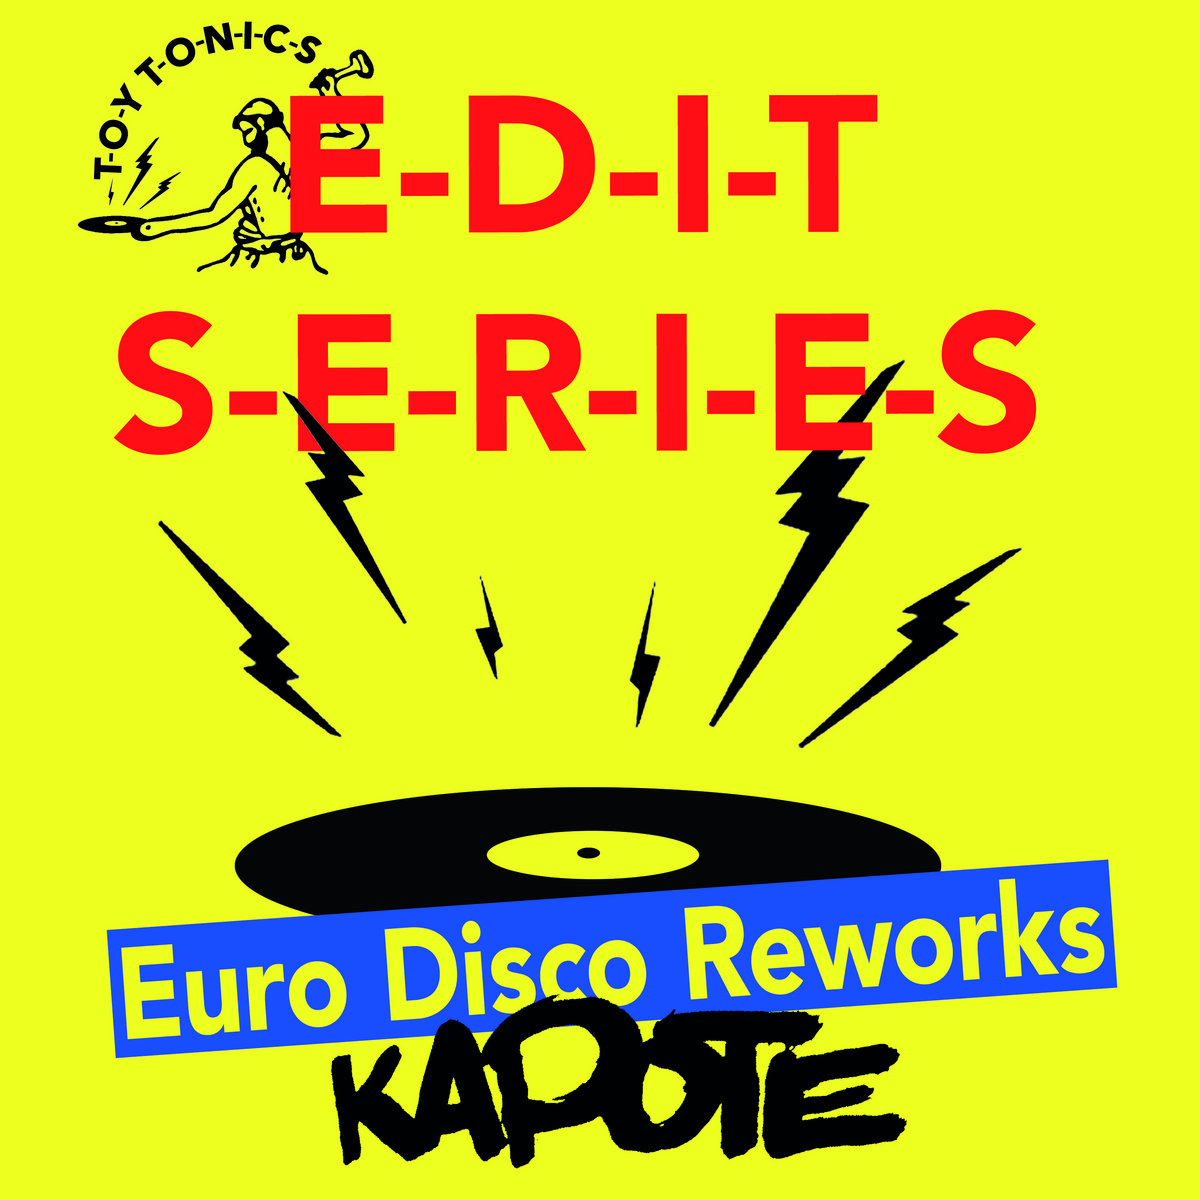 Download Kapote - Edit Series - Euro Disco Reworks on Electrobuzz